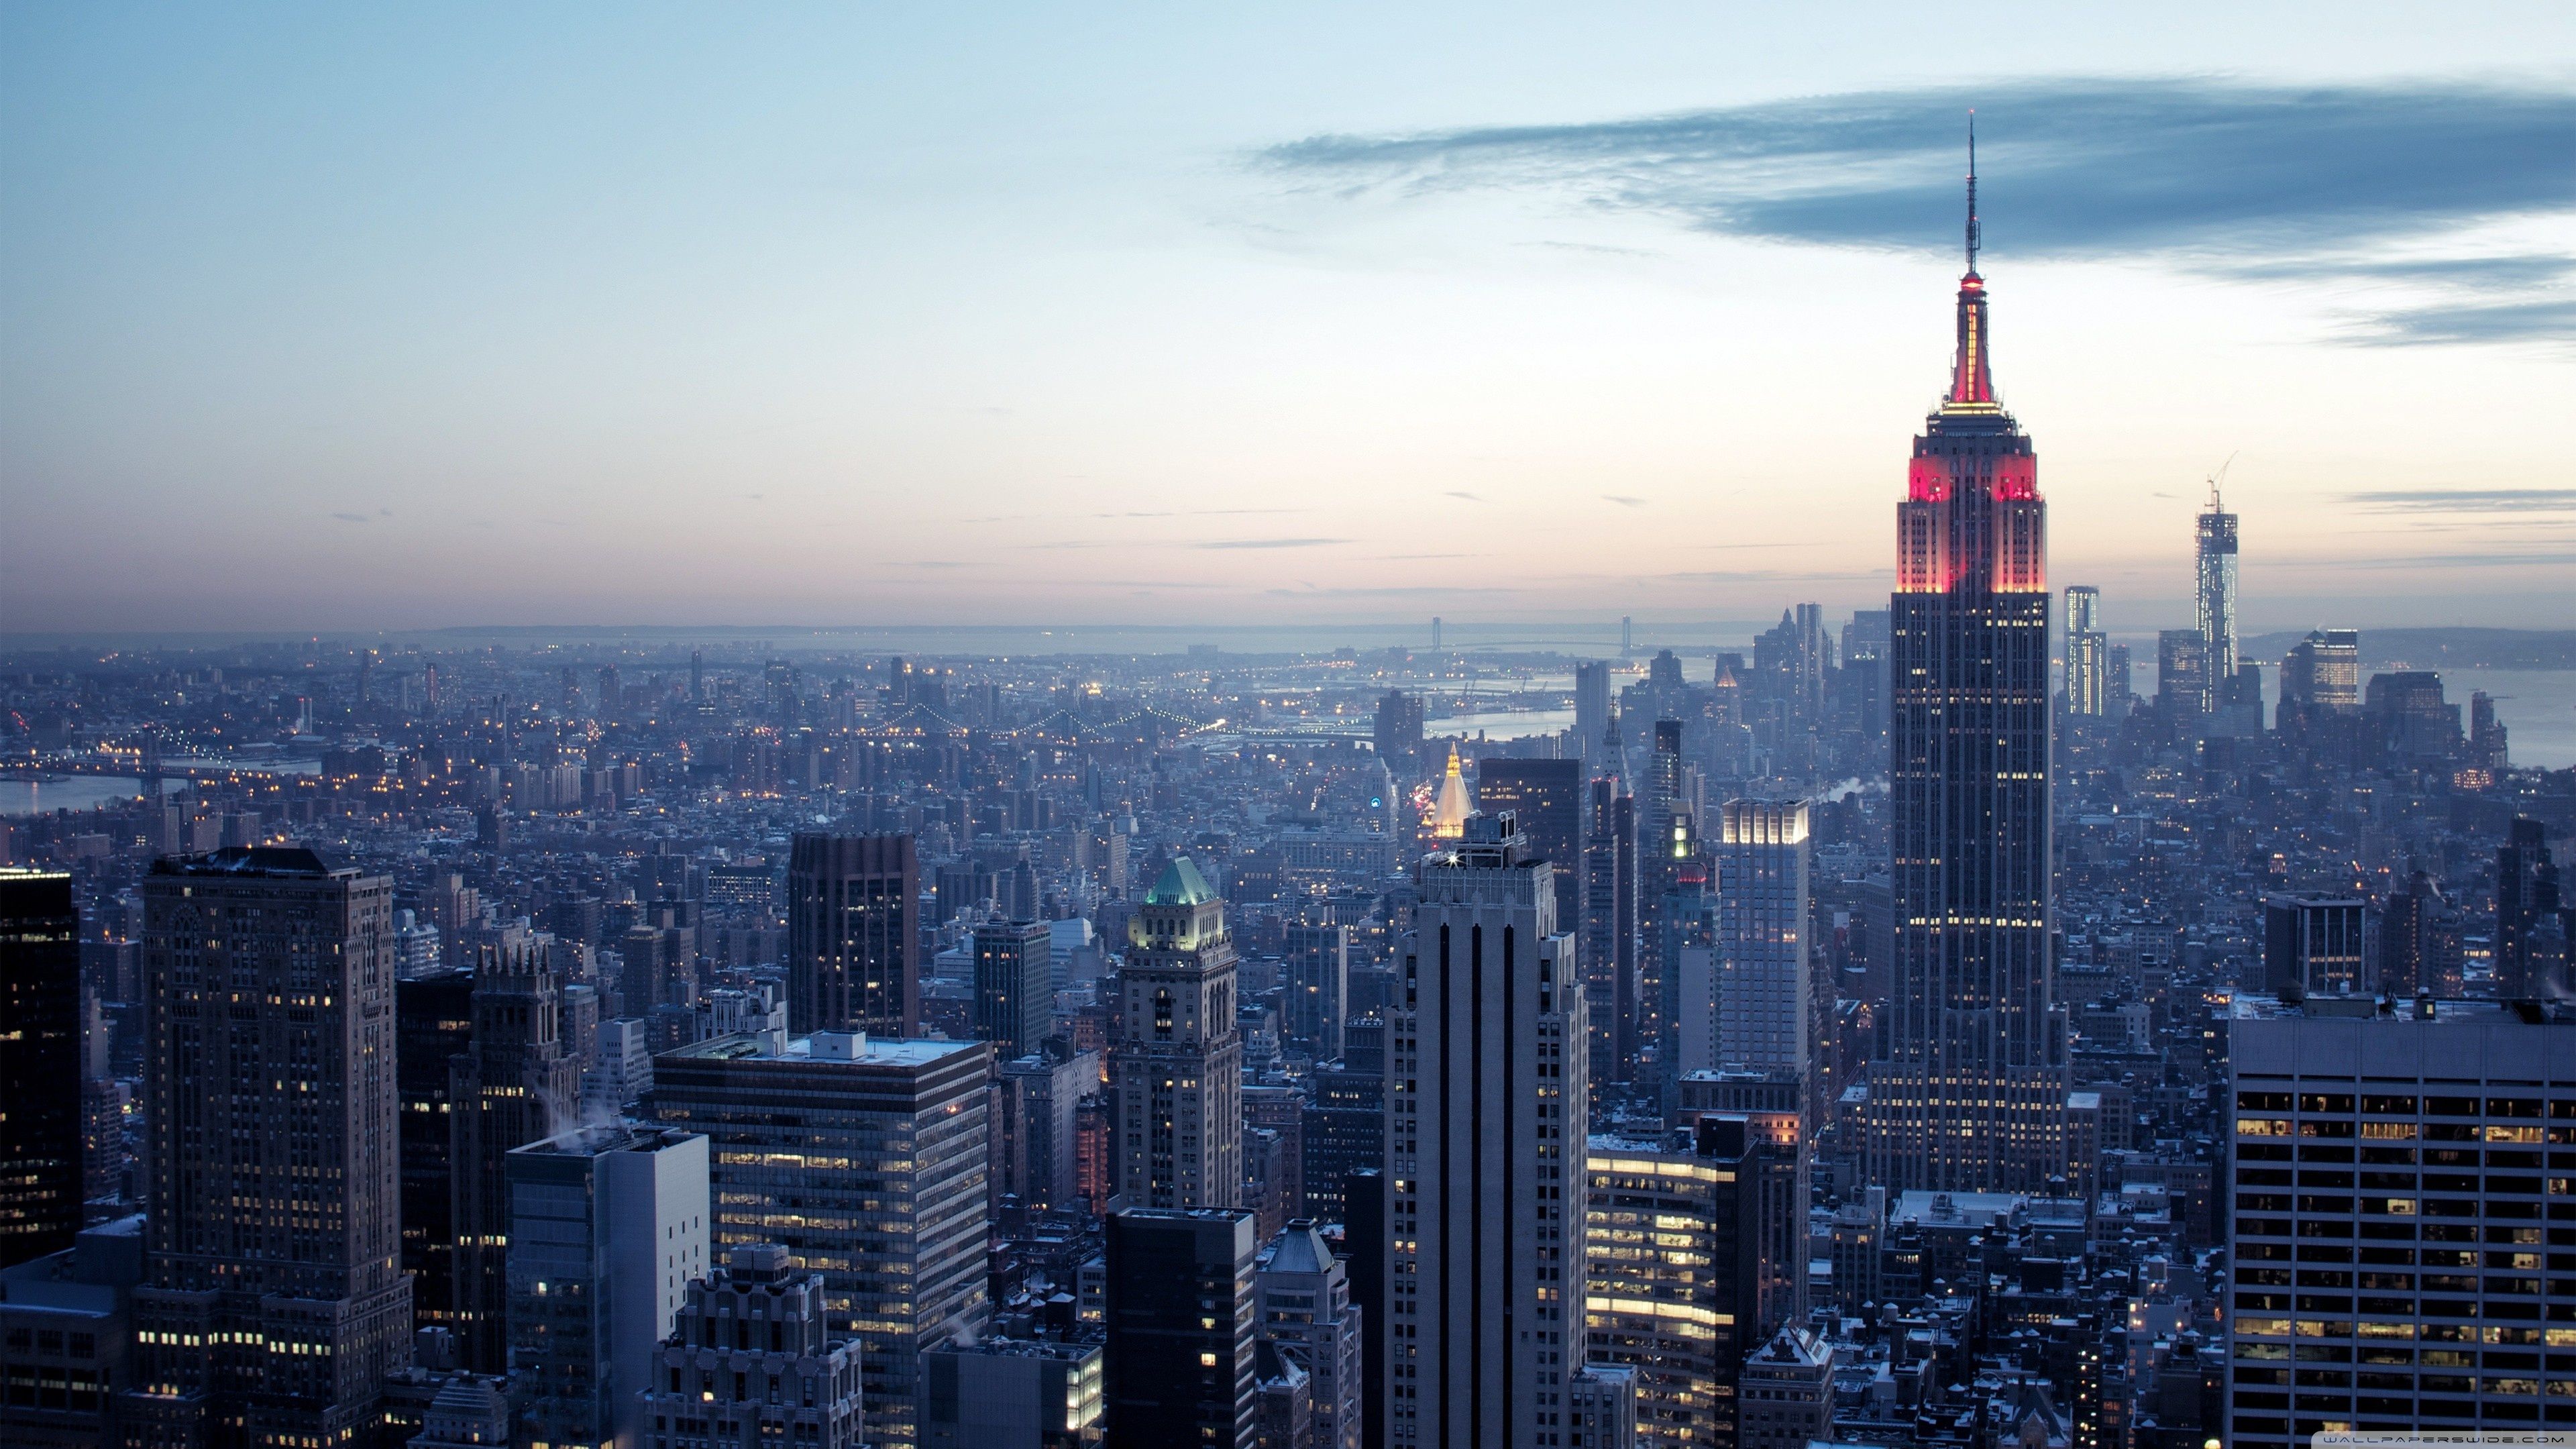 New York City - Wallpaper: Bức hình này sẽ đưa bạn đến thành phố New York quyến rũ với các tòa nhà chọc trời và đèn neon sáng đầy màu sắc. Sử dụng nó làm hình nền để cảm nhận được sự phấn khích và năng lượng của thành phố lớn này.